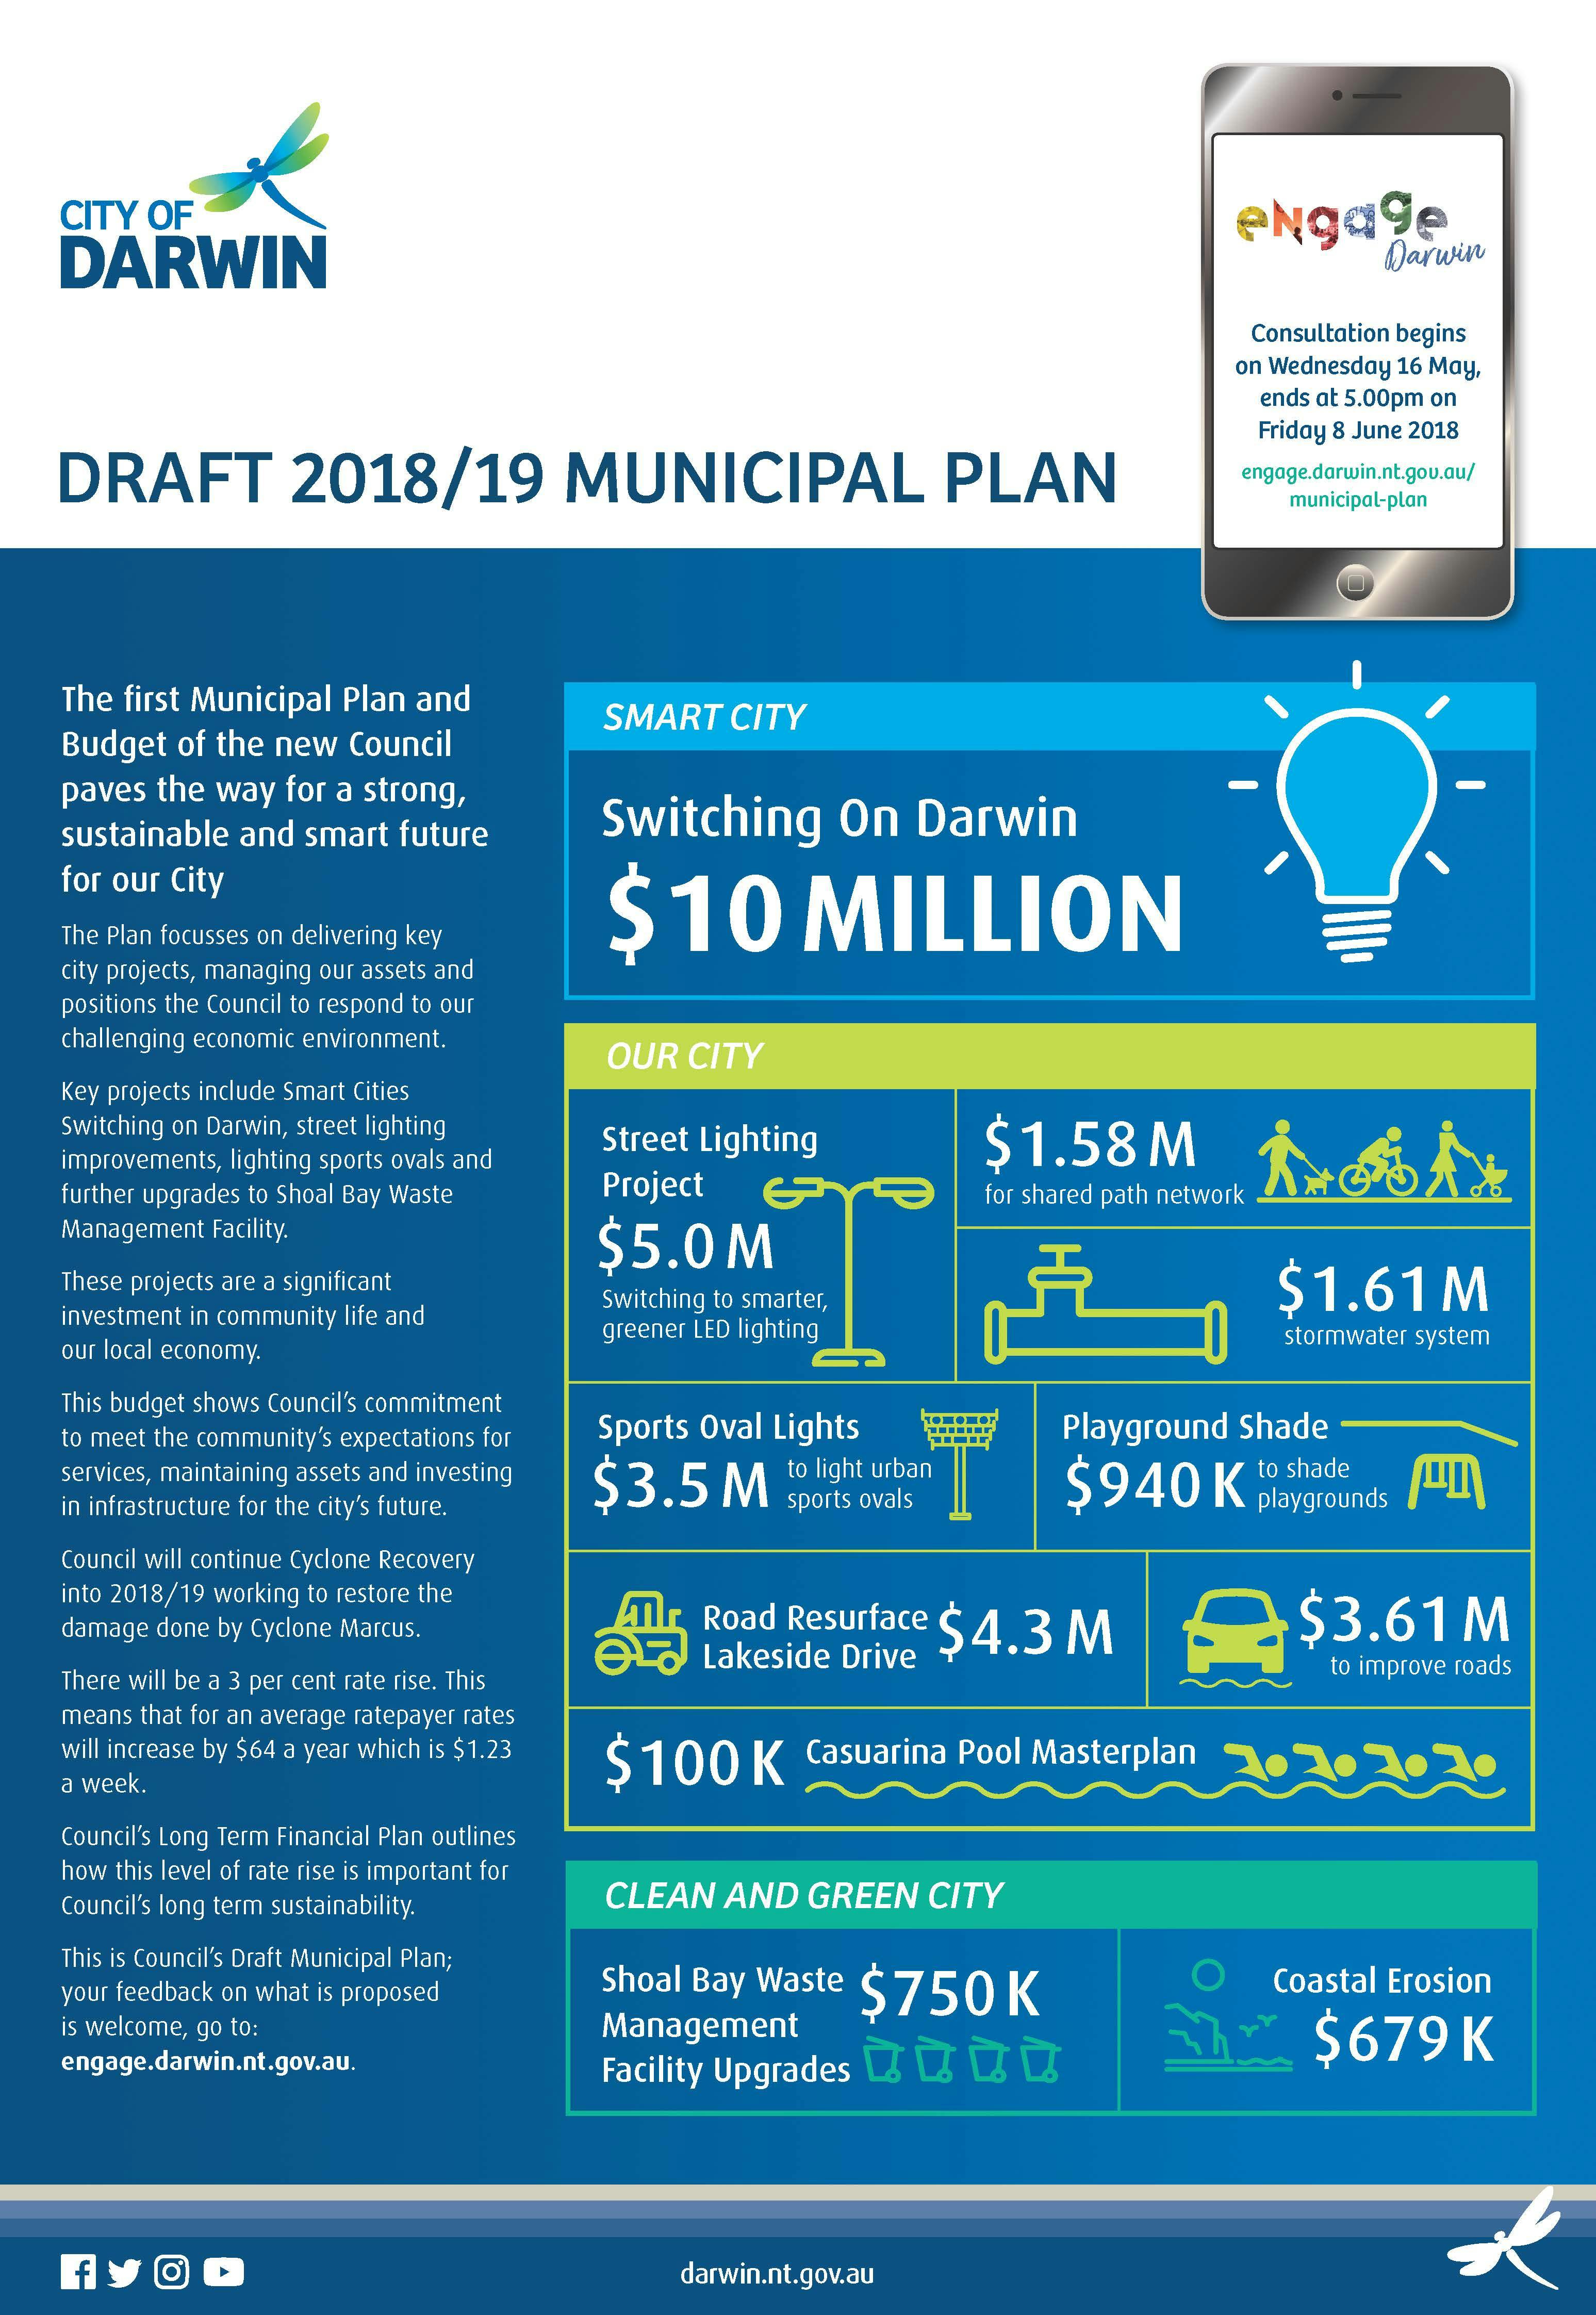 Municipal Plan Highlights